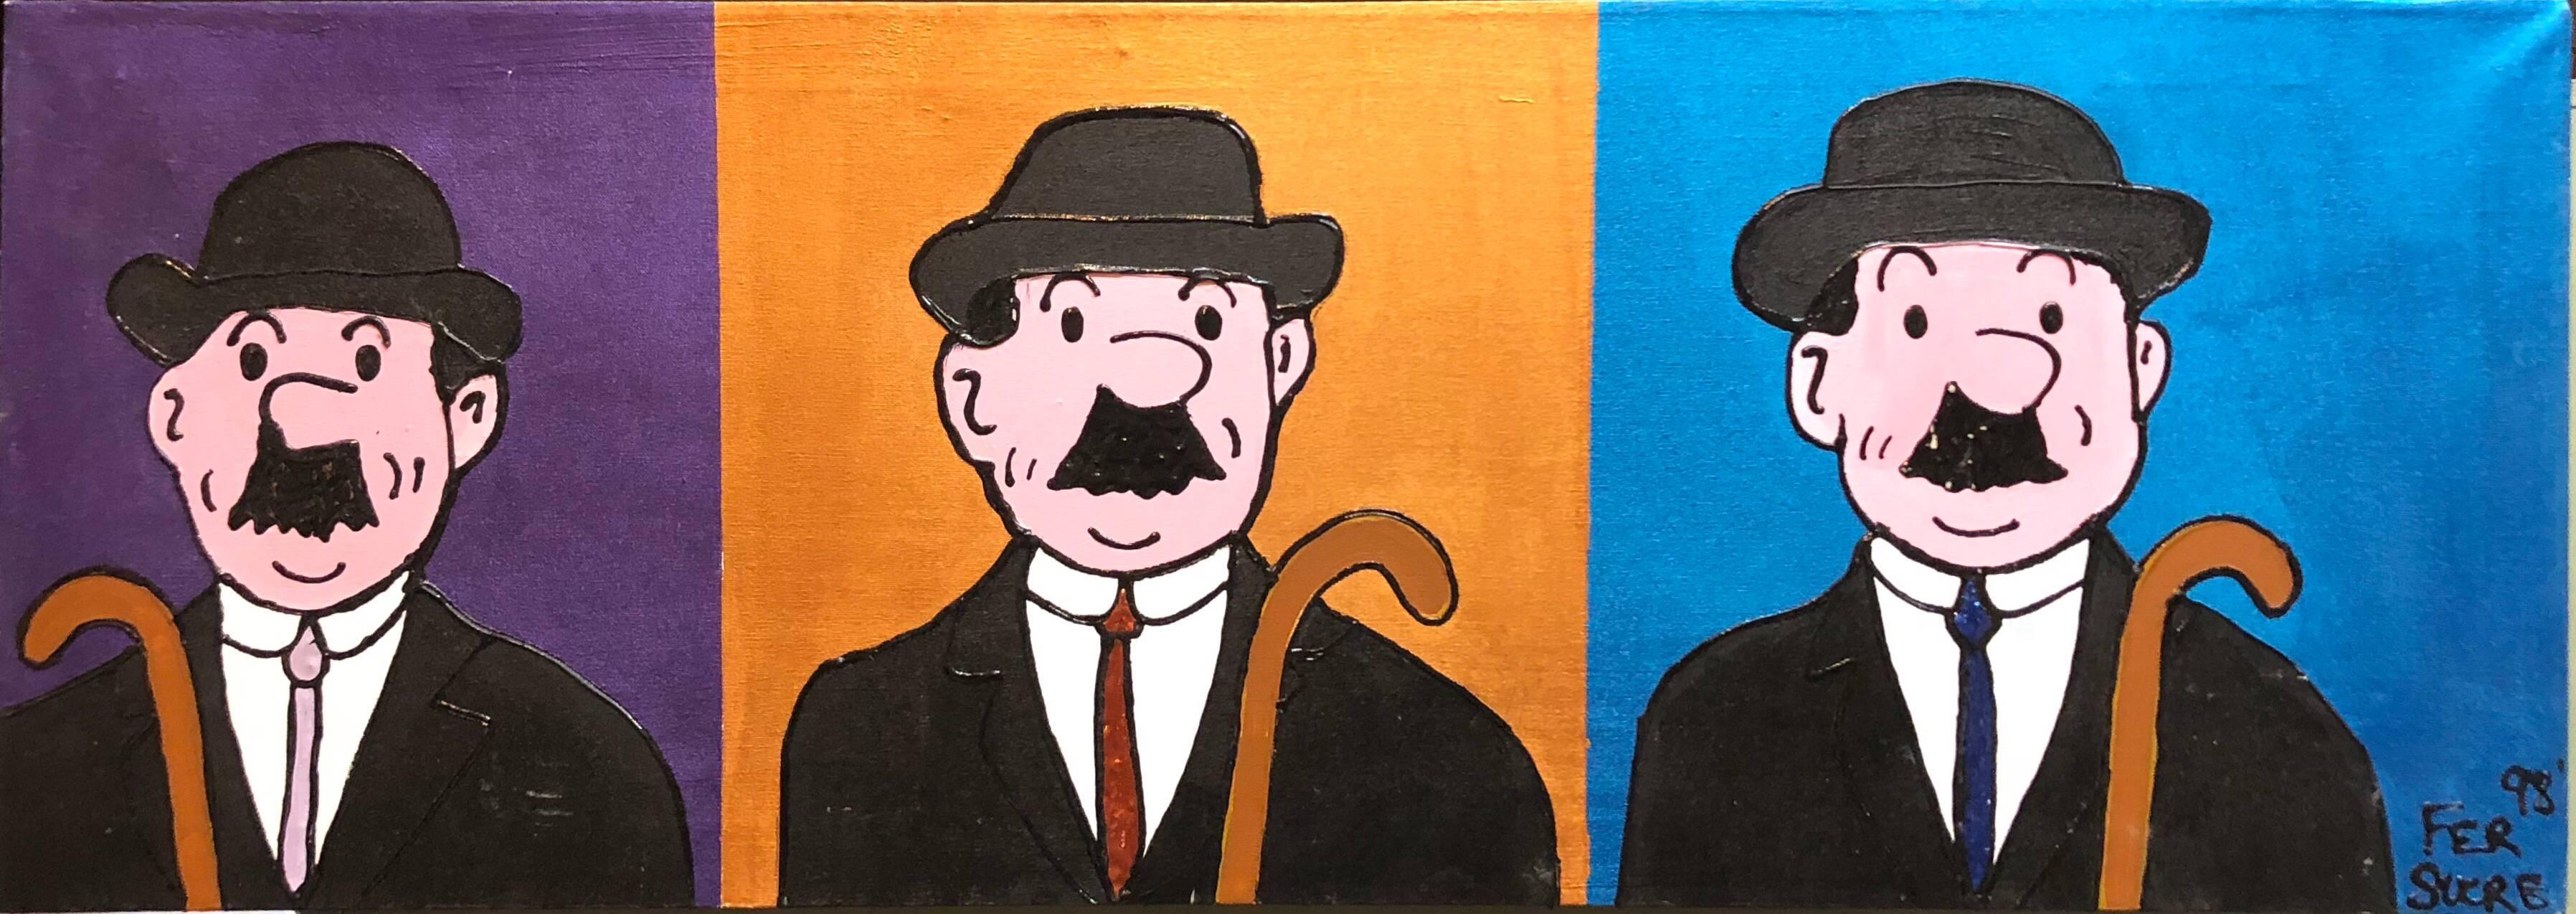 Ce sont les détectives de la bande dessinée belge Tintin créée par Herge. FER SUCRE est un artiste d'origine vénézuélienne qui vit actuellement à Wynwood Miami, en Floride. Il a étudié le graphisme et la peinture à l'Institut de Design/One et à